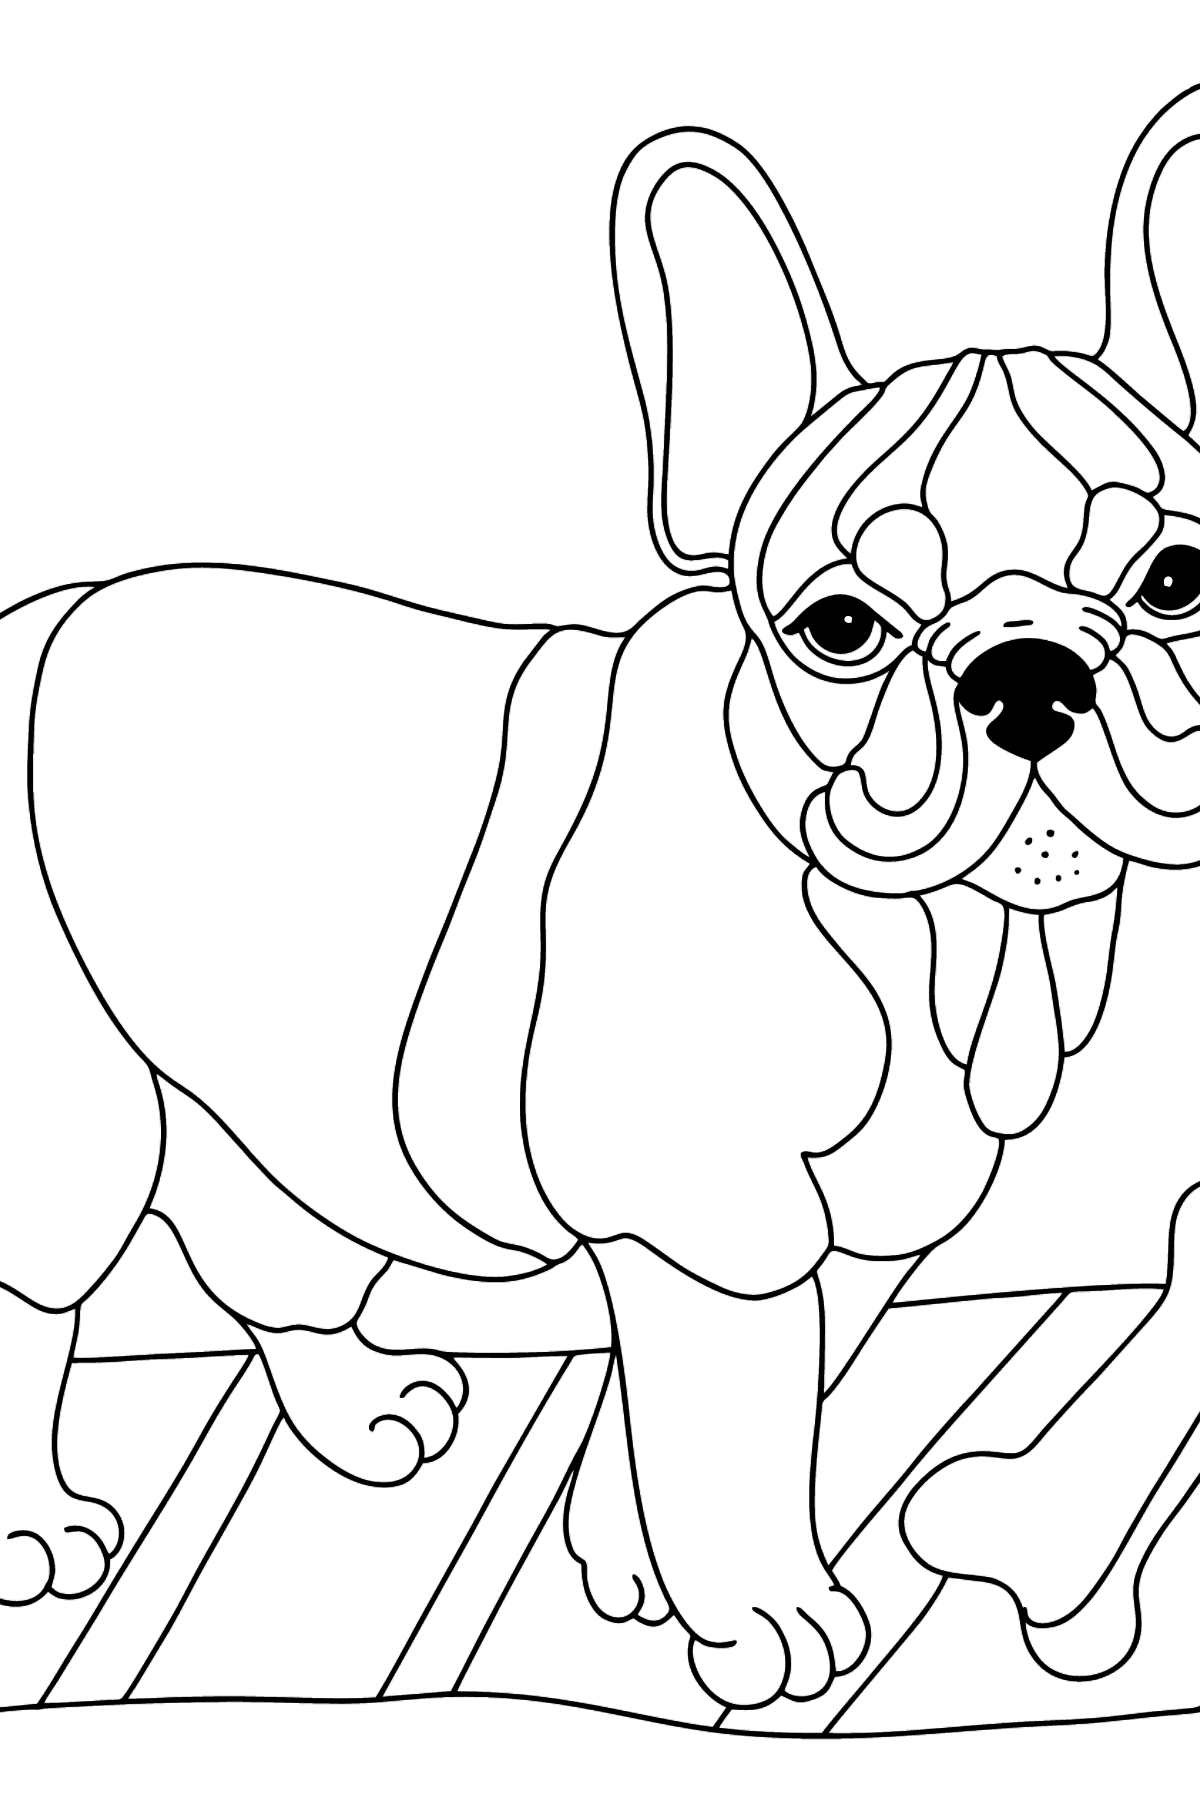 Desenho do Bulldog Francês para colorir - Imagens para Colorir para Crianças